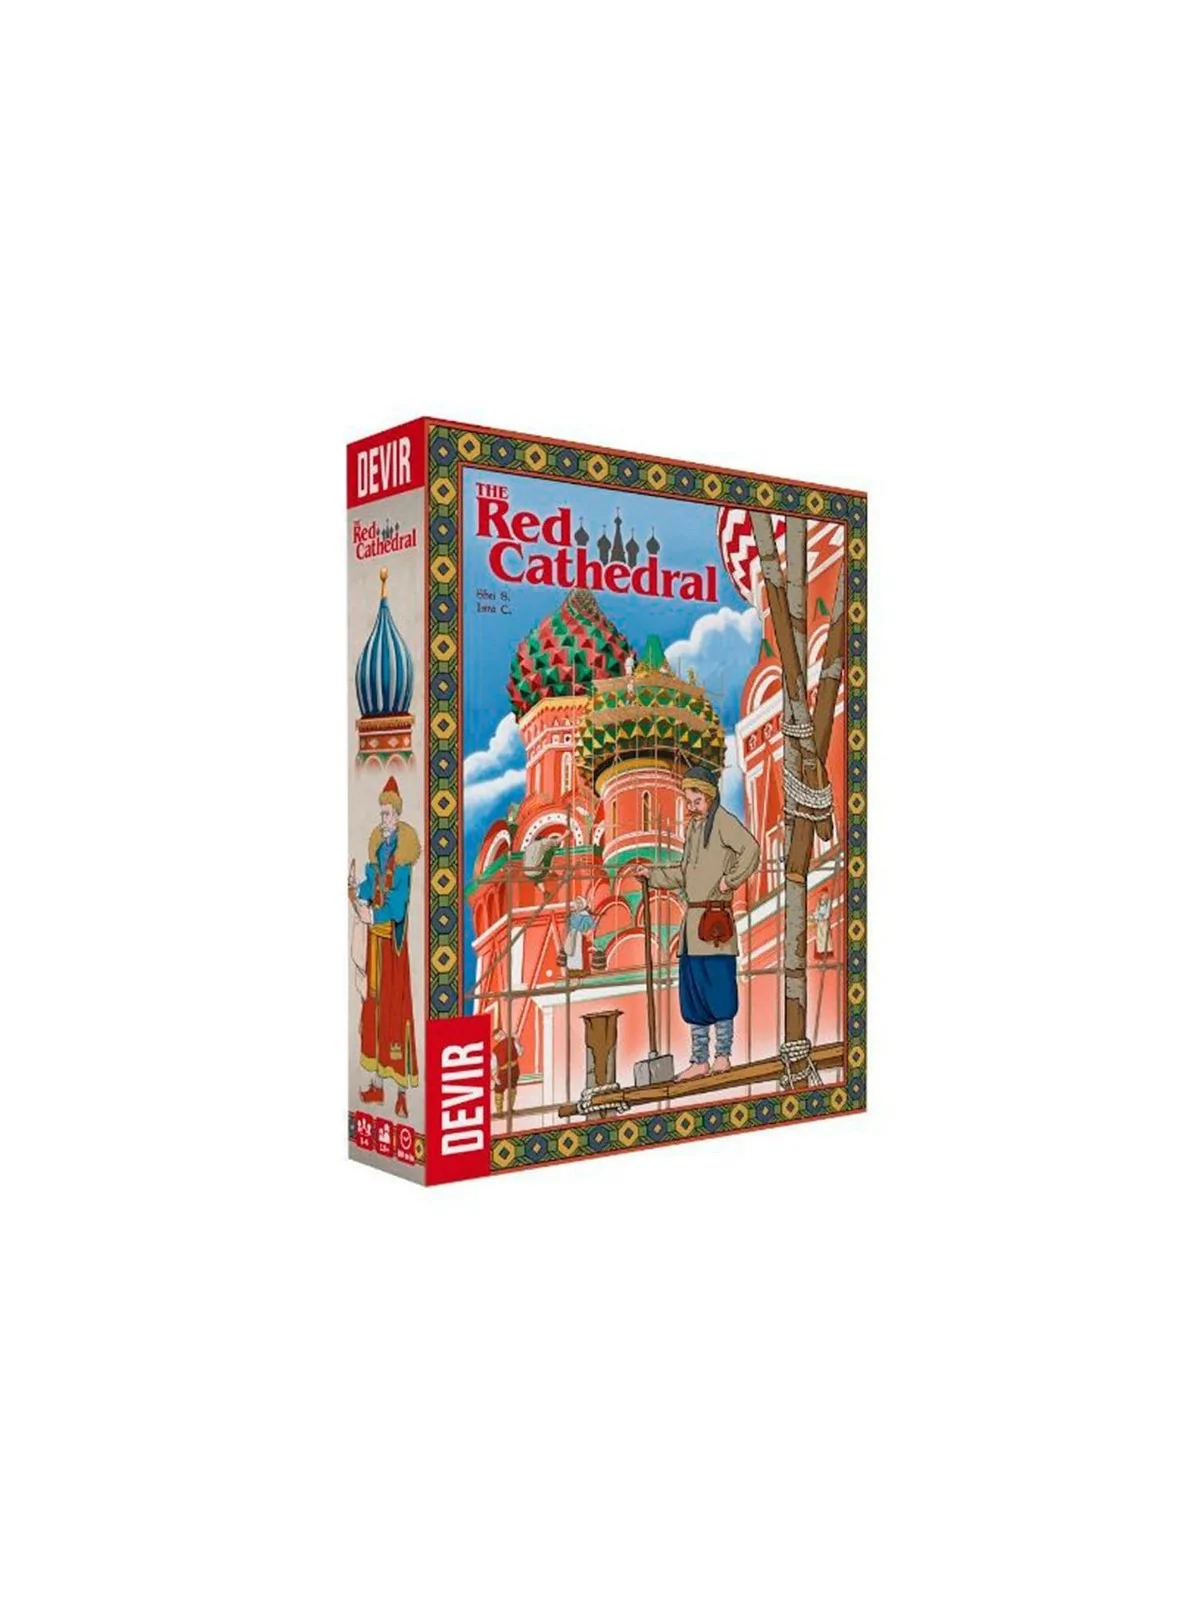 Comprar The Red Cathedral barato al mejor precio 29,61 € de Devir